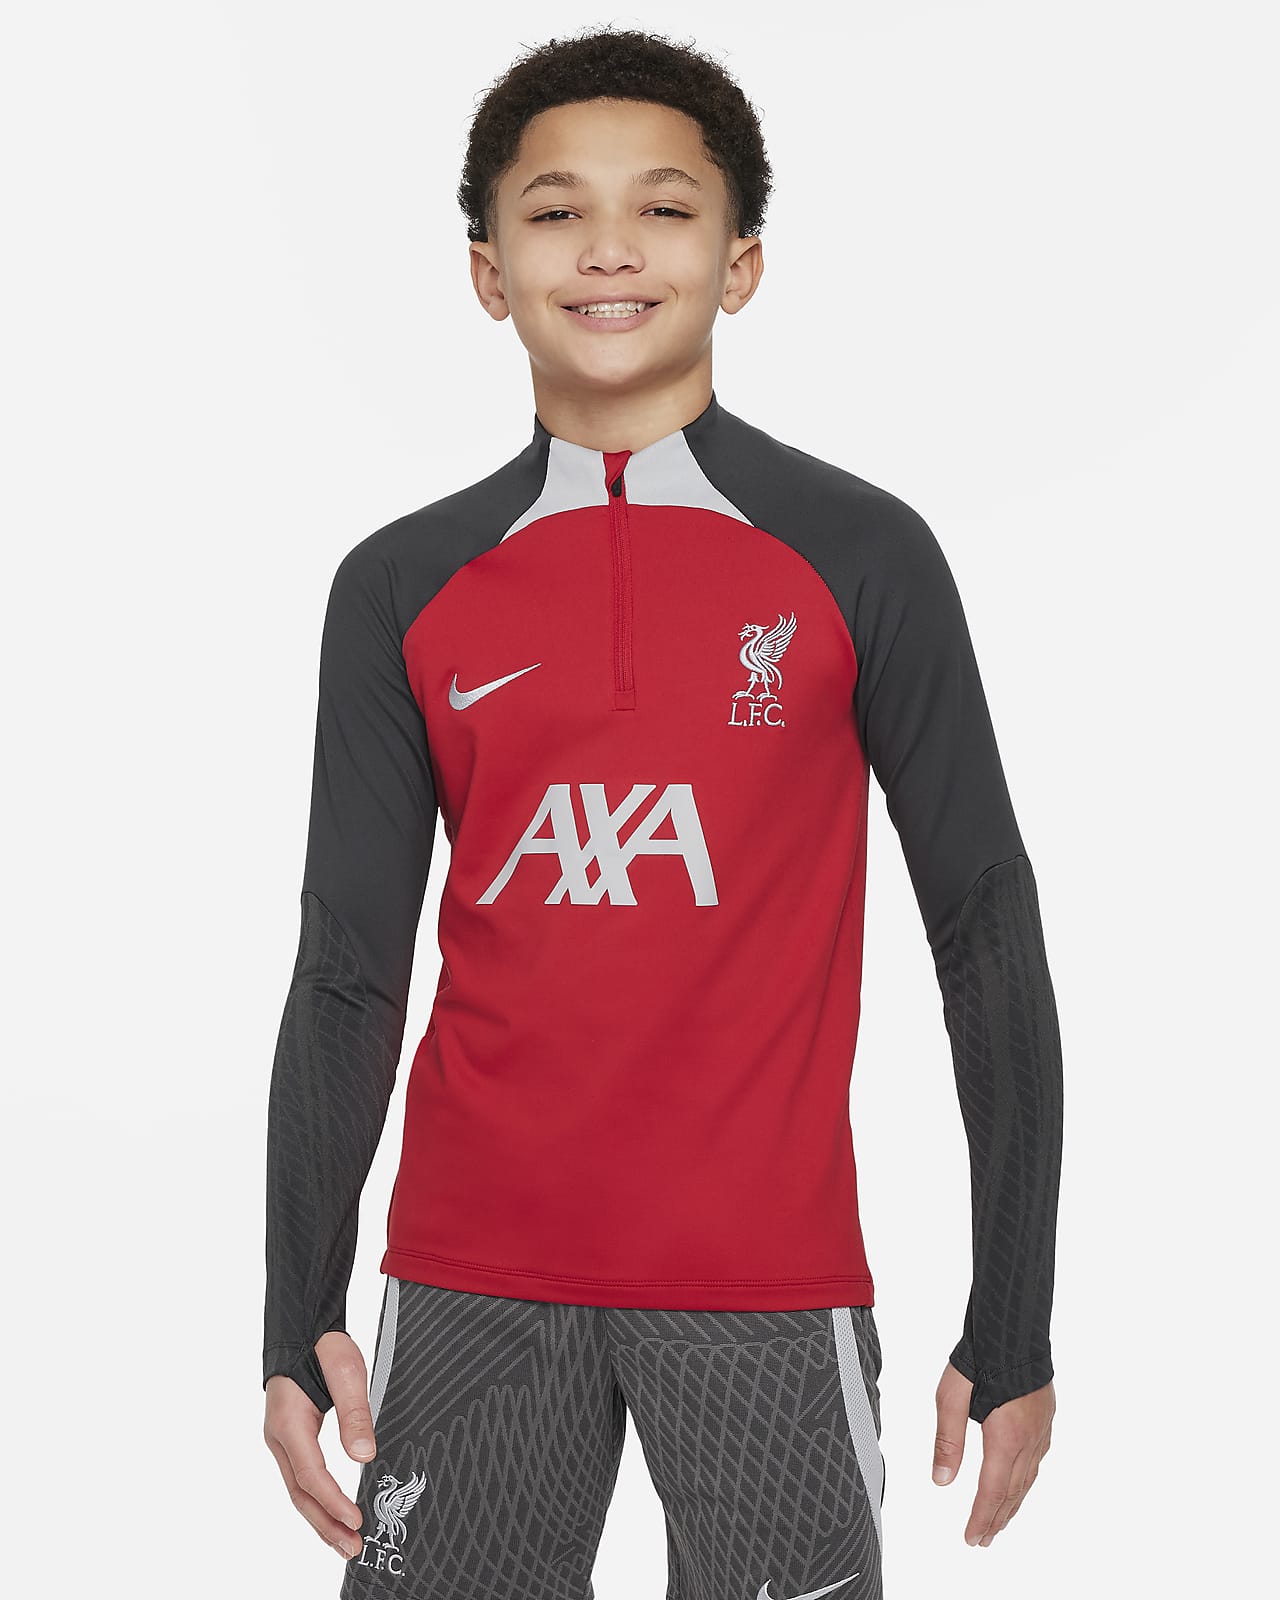 Ποδοσφαιρική μπλούζα προπόνησης Nike Dri-FIT Λίβερπουλ Strike για μεγάλα παιδιά